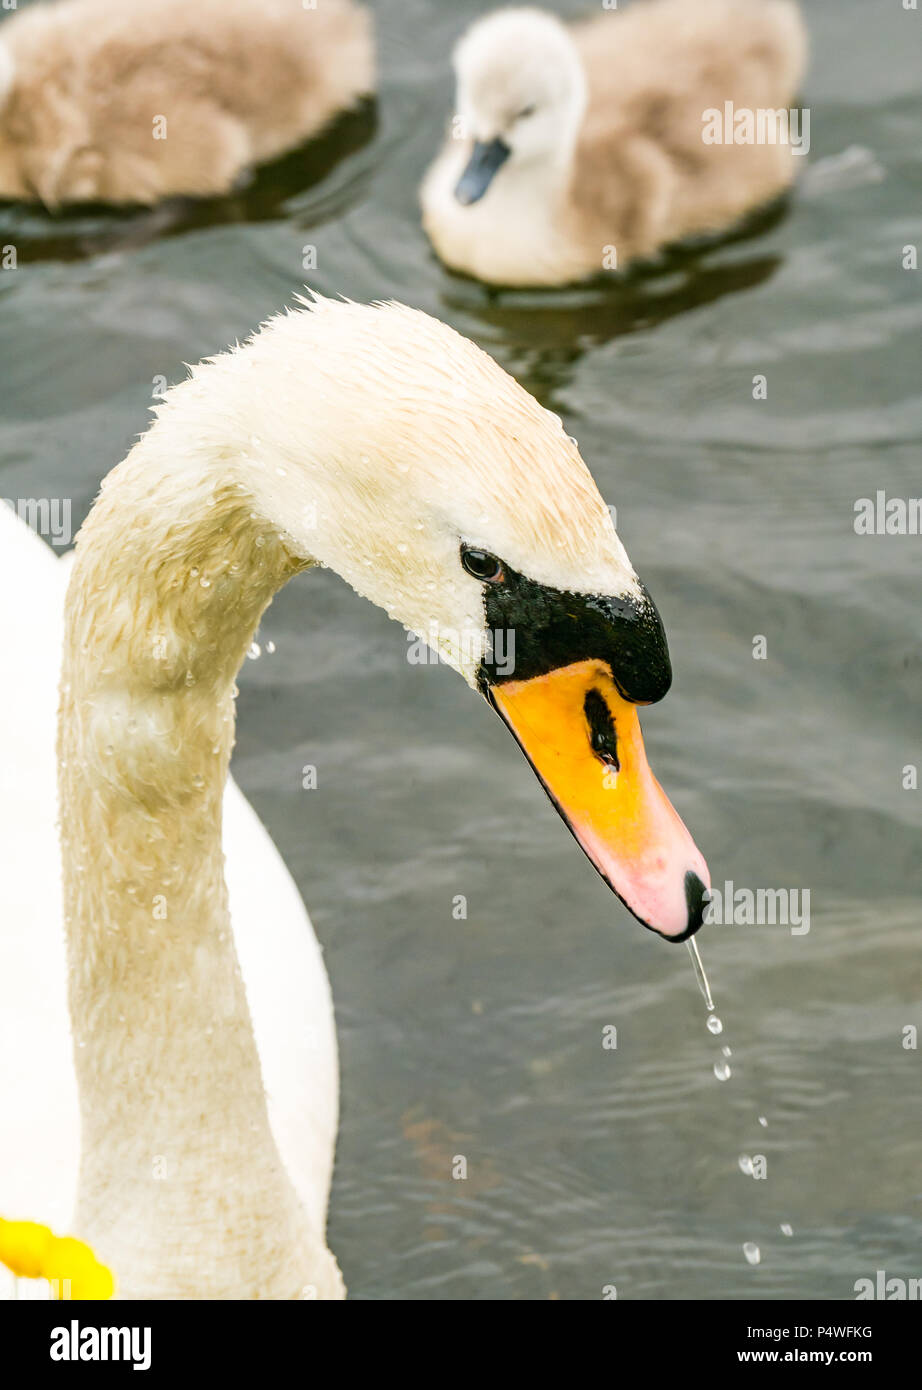 Nahaufnahme des Kopfes von erwachsenen Mute swan mit Wasser tropft vom Schnabel, Cygnus olor, Forth & Clyde Kanal, Falkirk, Schottland, UK Stockfoto